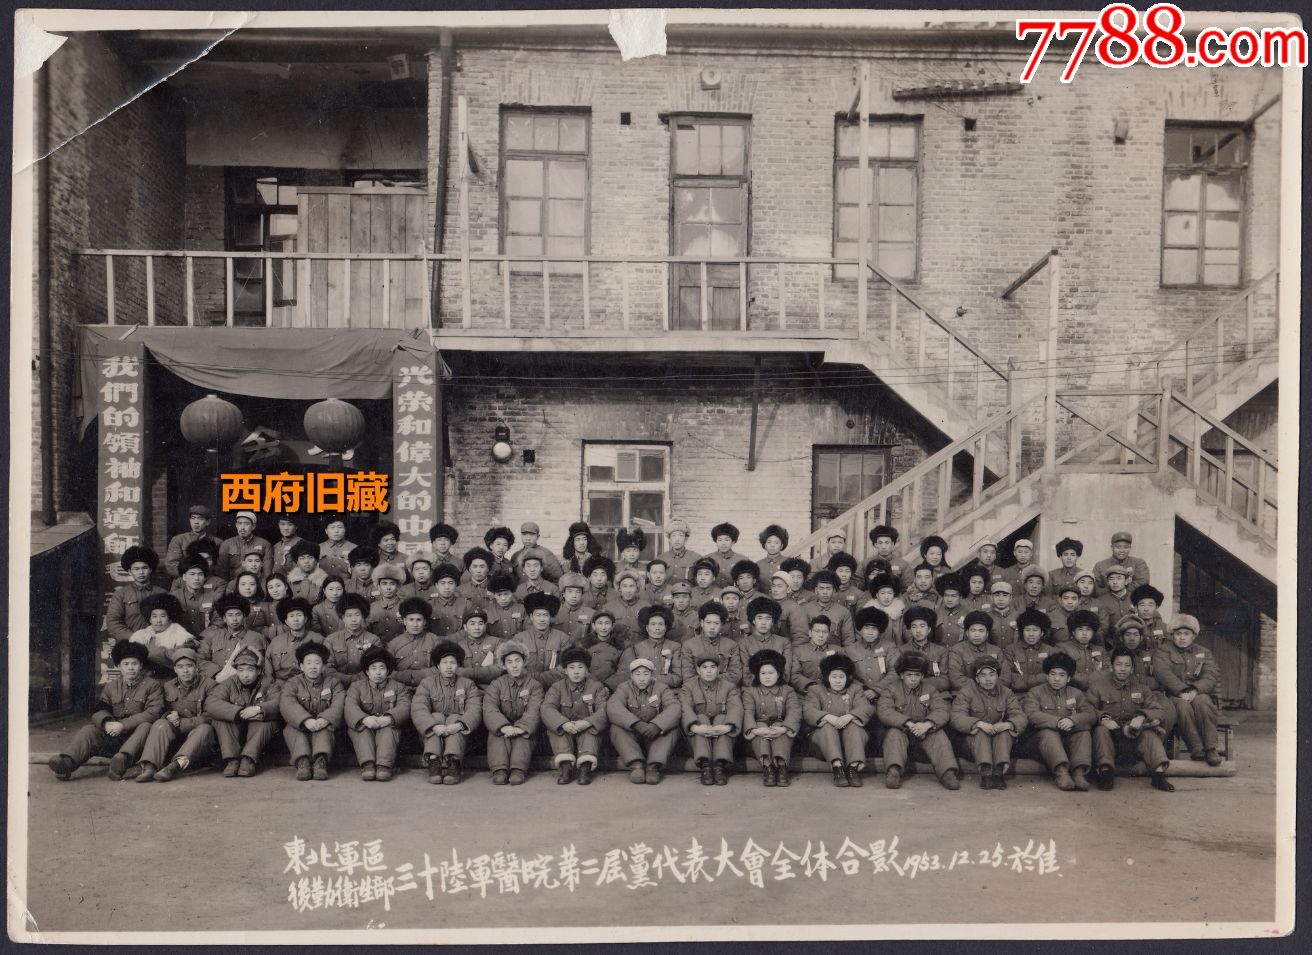 1953年,东北*区卫生部三十【陆*医院】全体合影老照片,于佳木斯